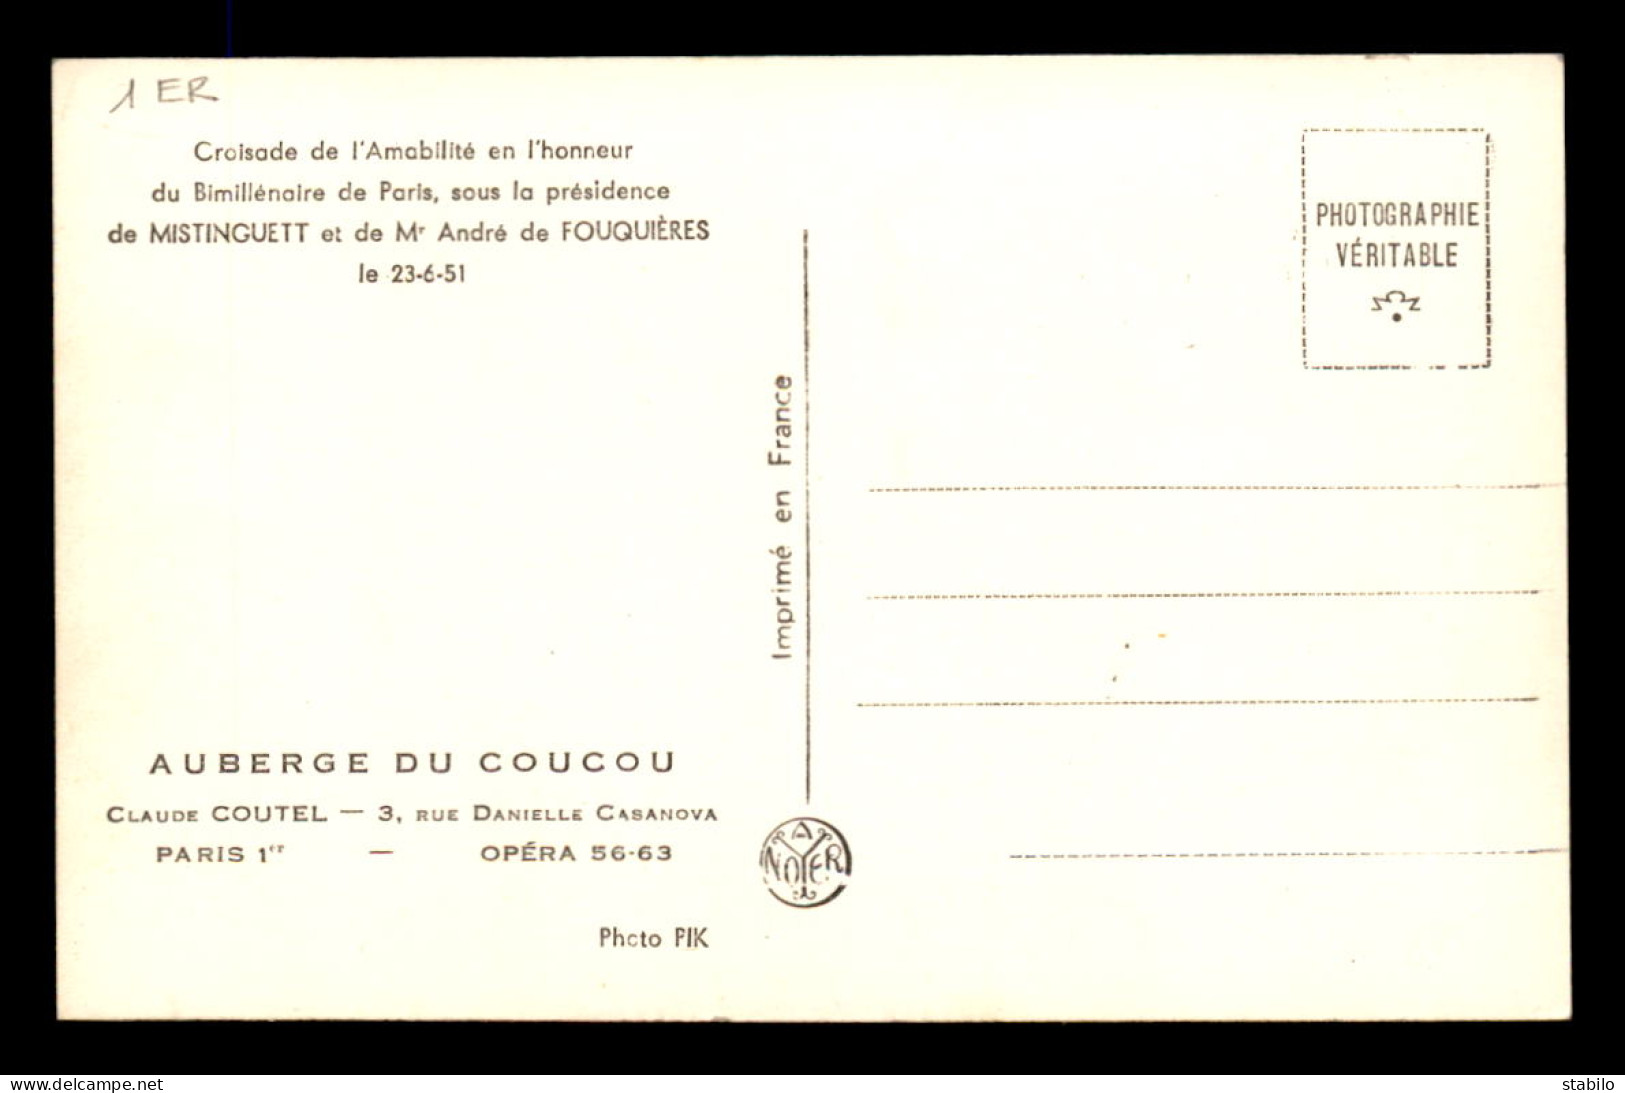 75 - PARIS 1ER - AUBERGE DU COUCOU, 3 RUE CASANOVA - CROISADE DE L'AMABILITE JUIN 1951 - MISTINGUETT ET A. DE FOUQUIERES - Arrondissement: 01